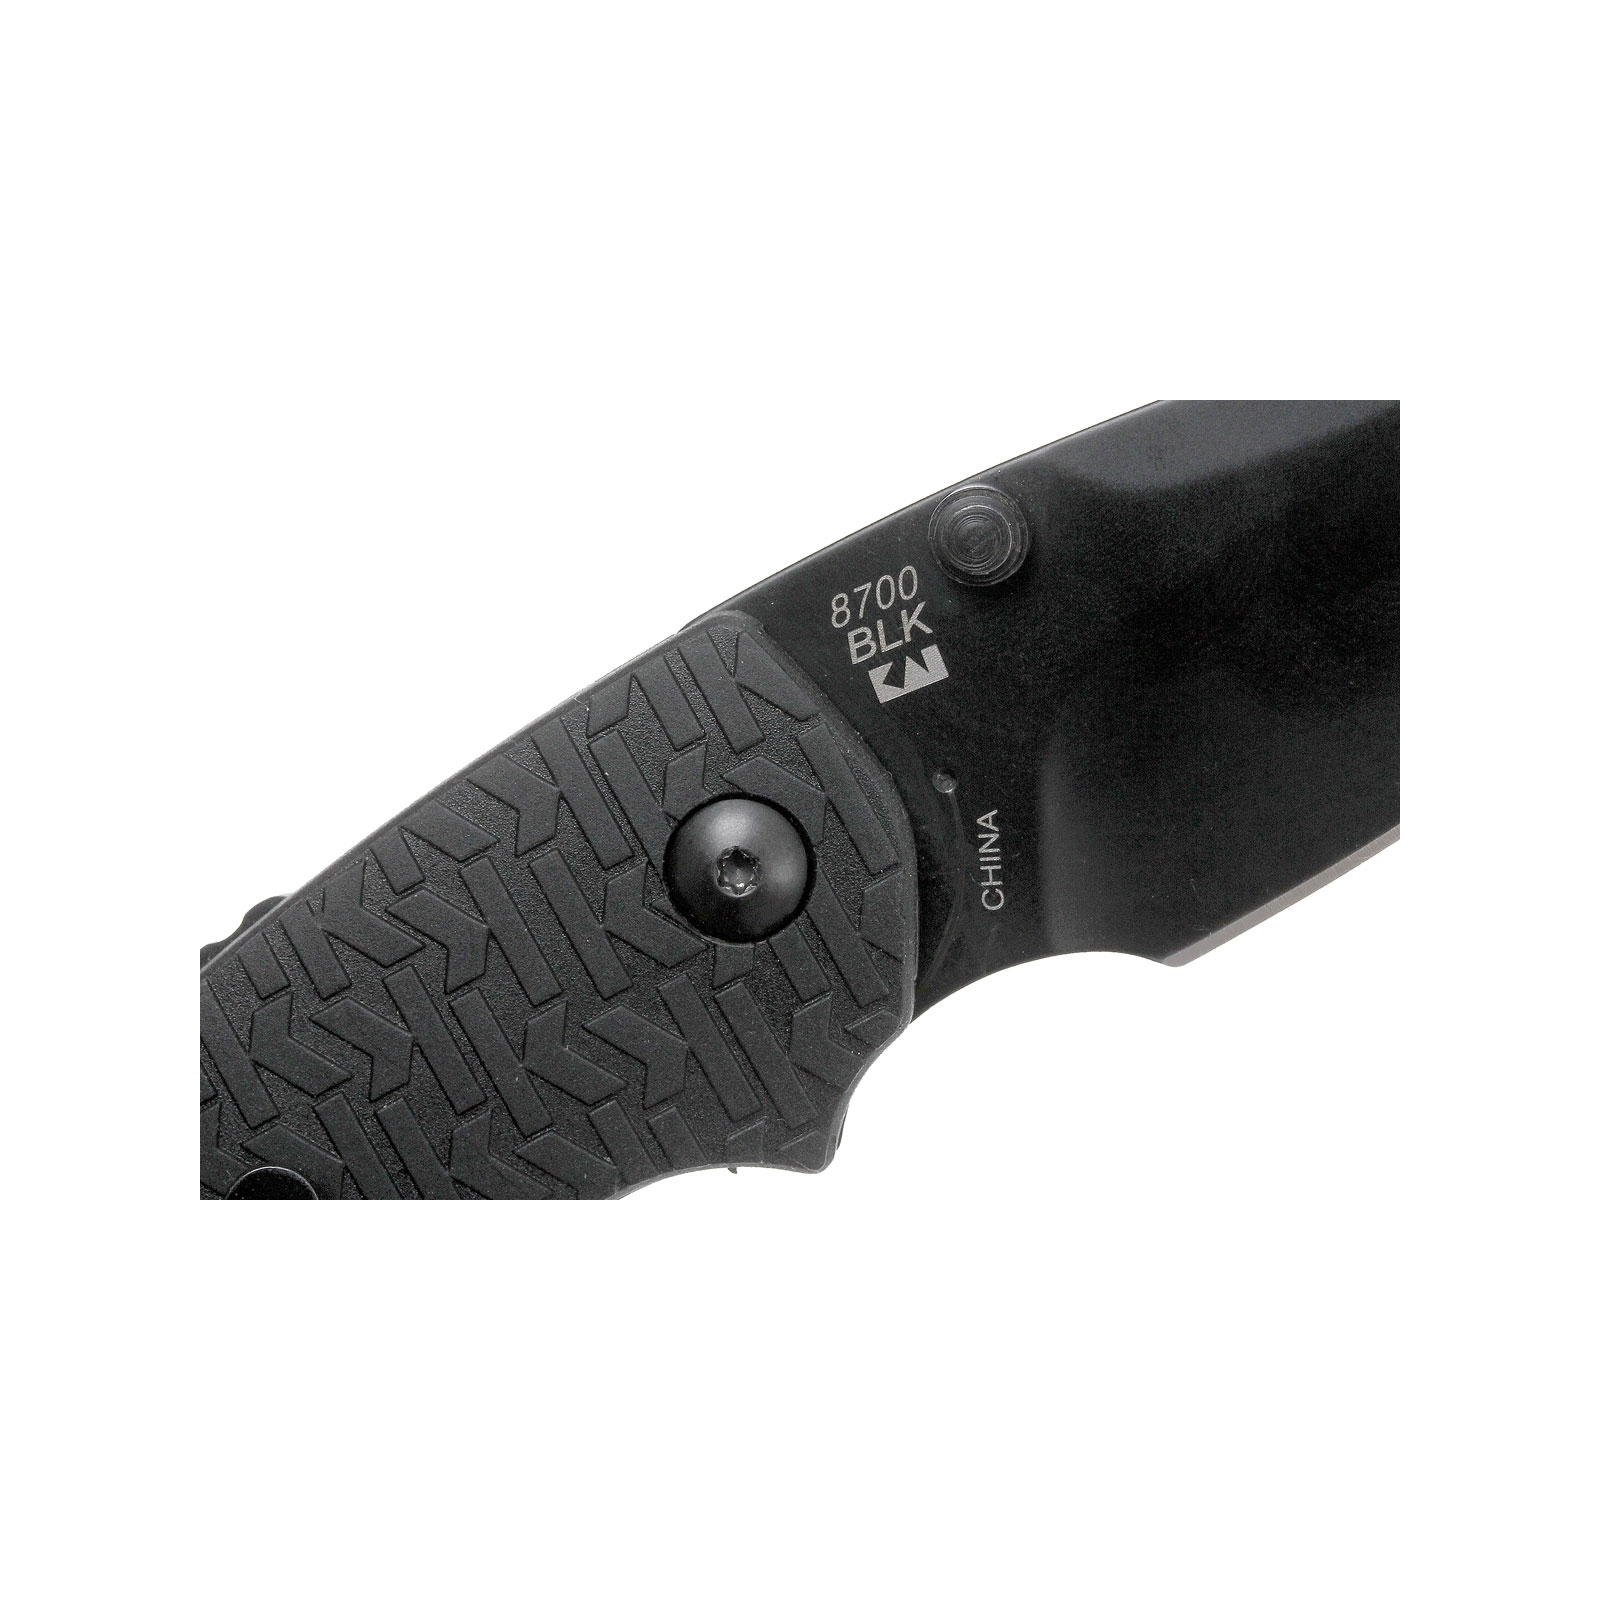 Нож Kershaw Shuffle фиолетовый (8700PURBW) изображение 4